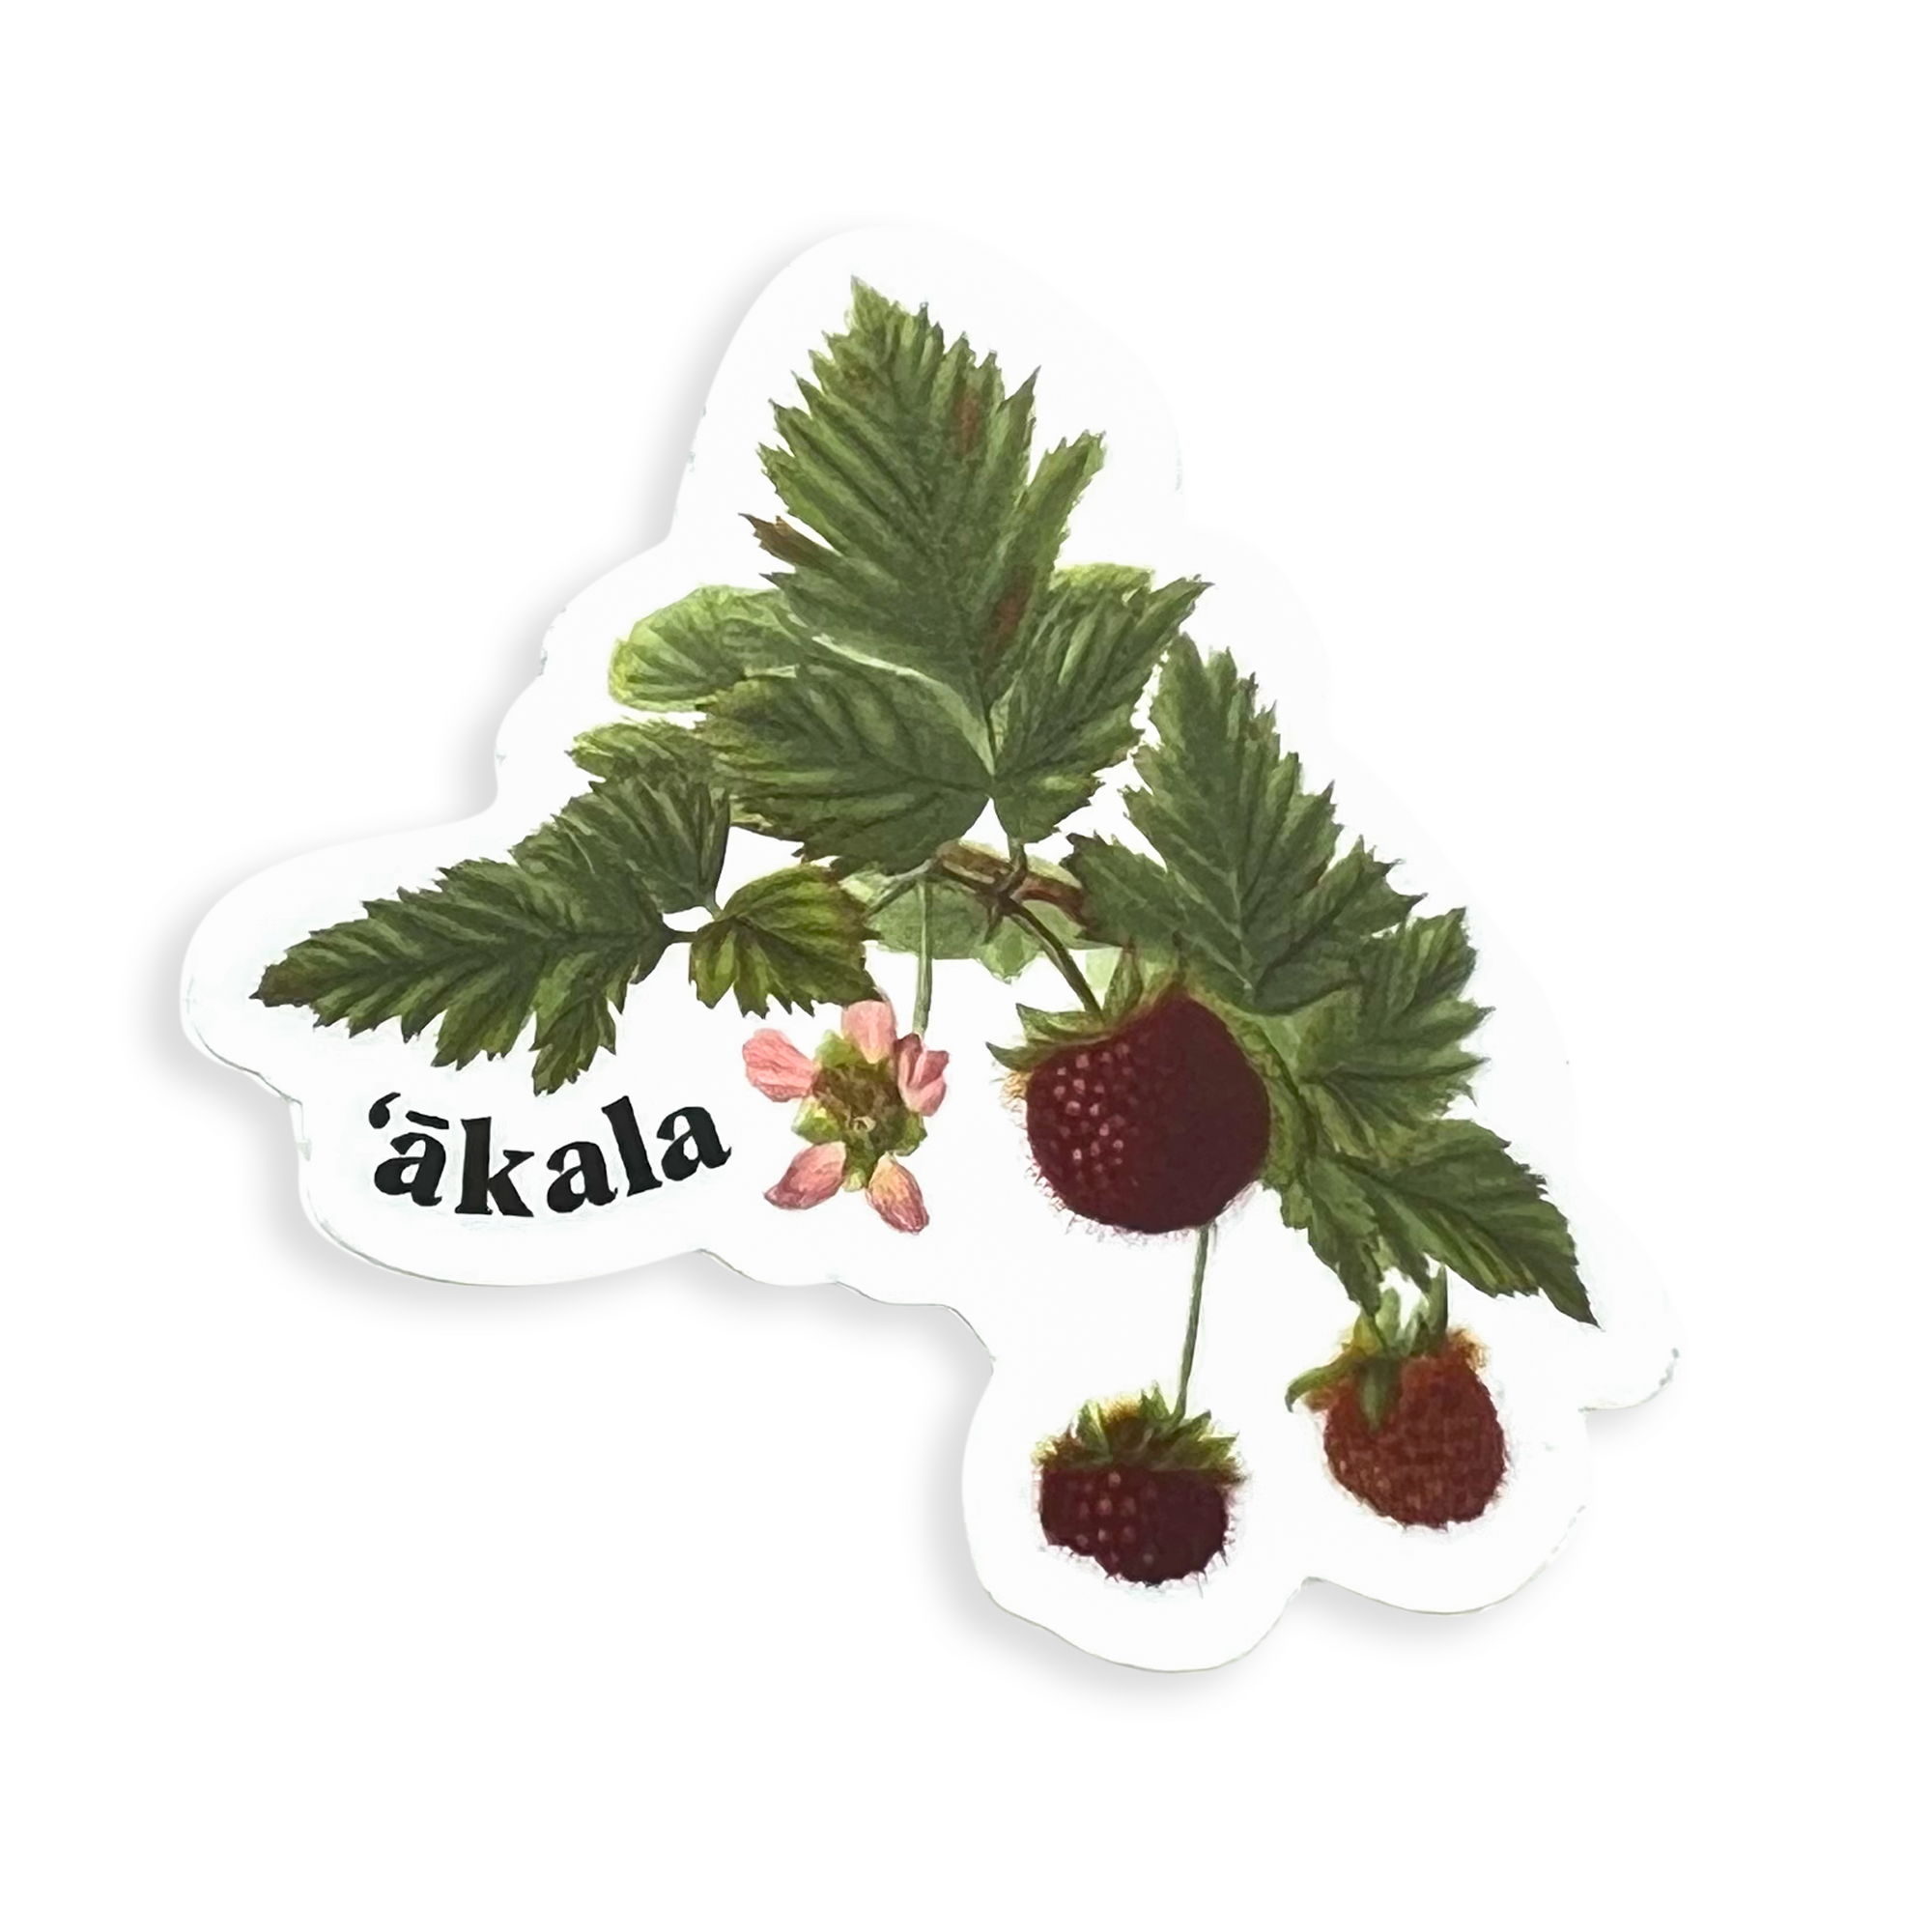 Pop-Up Mākeke - Laulima Hawai'i - Native Pua Sticker Pack - 'Akala